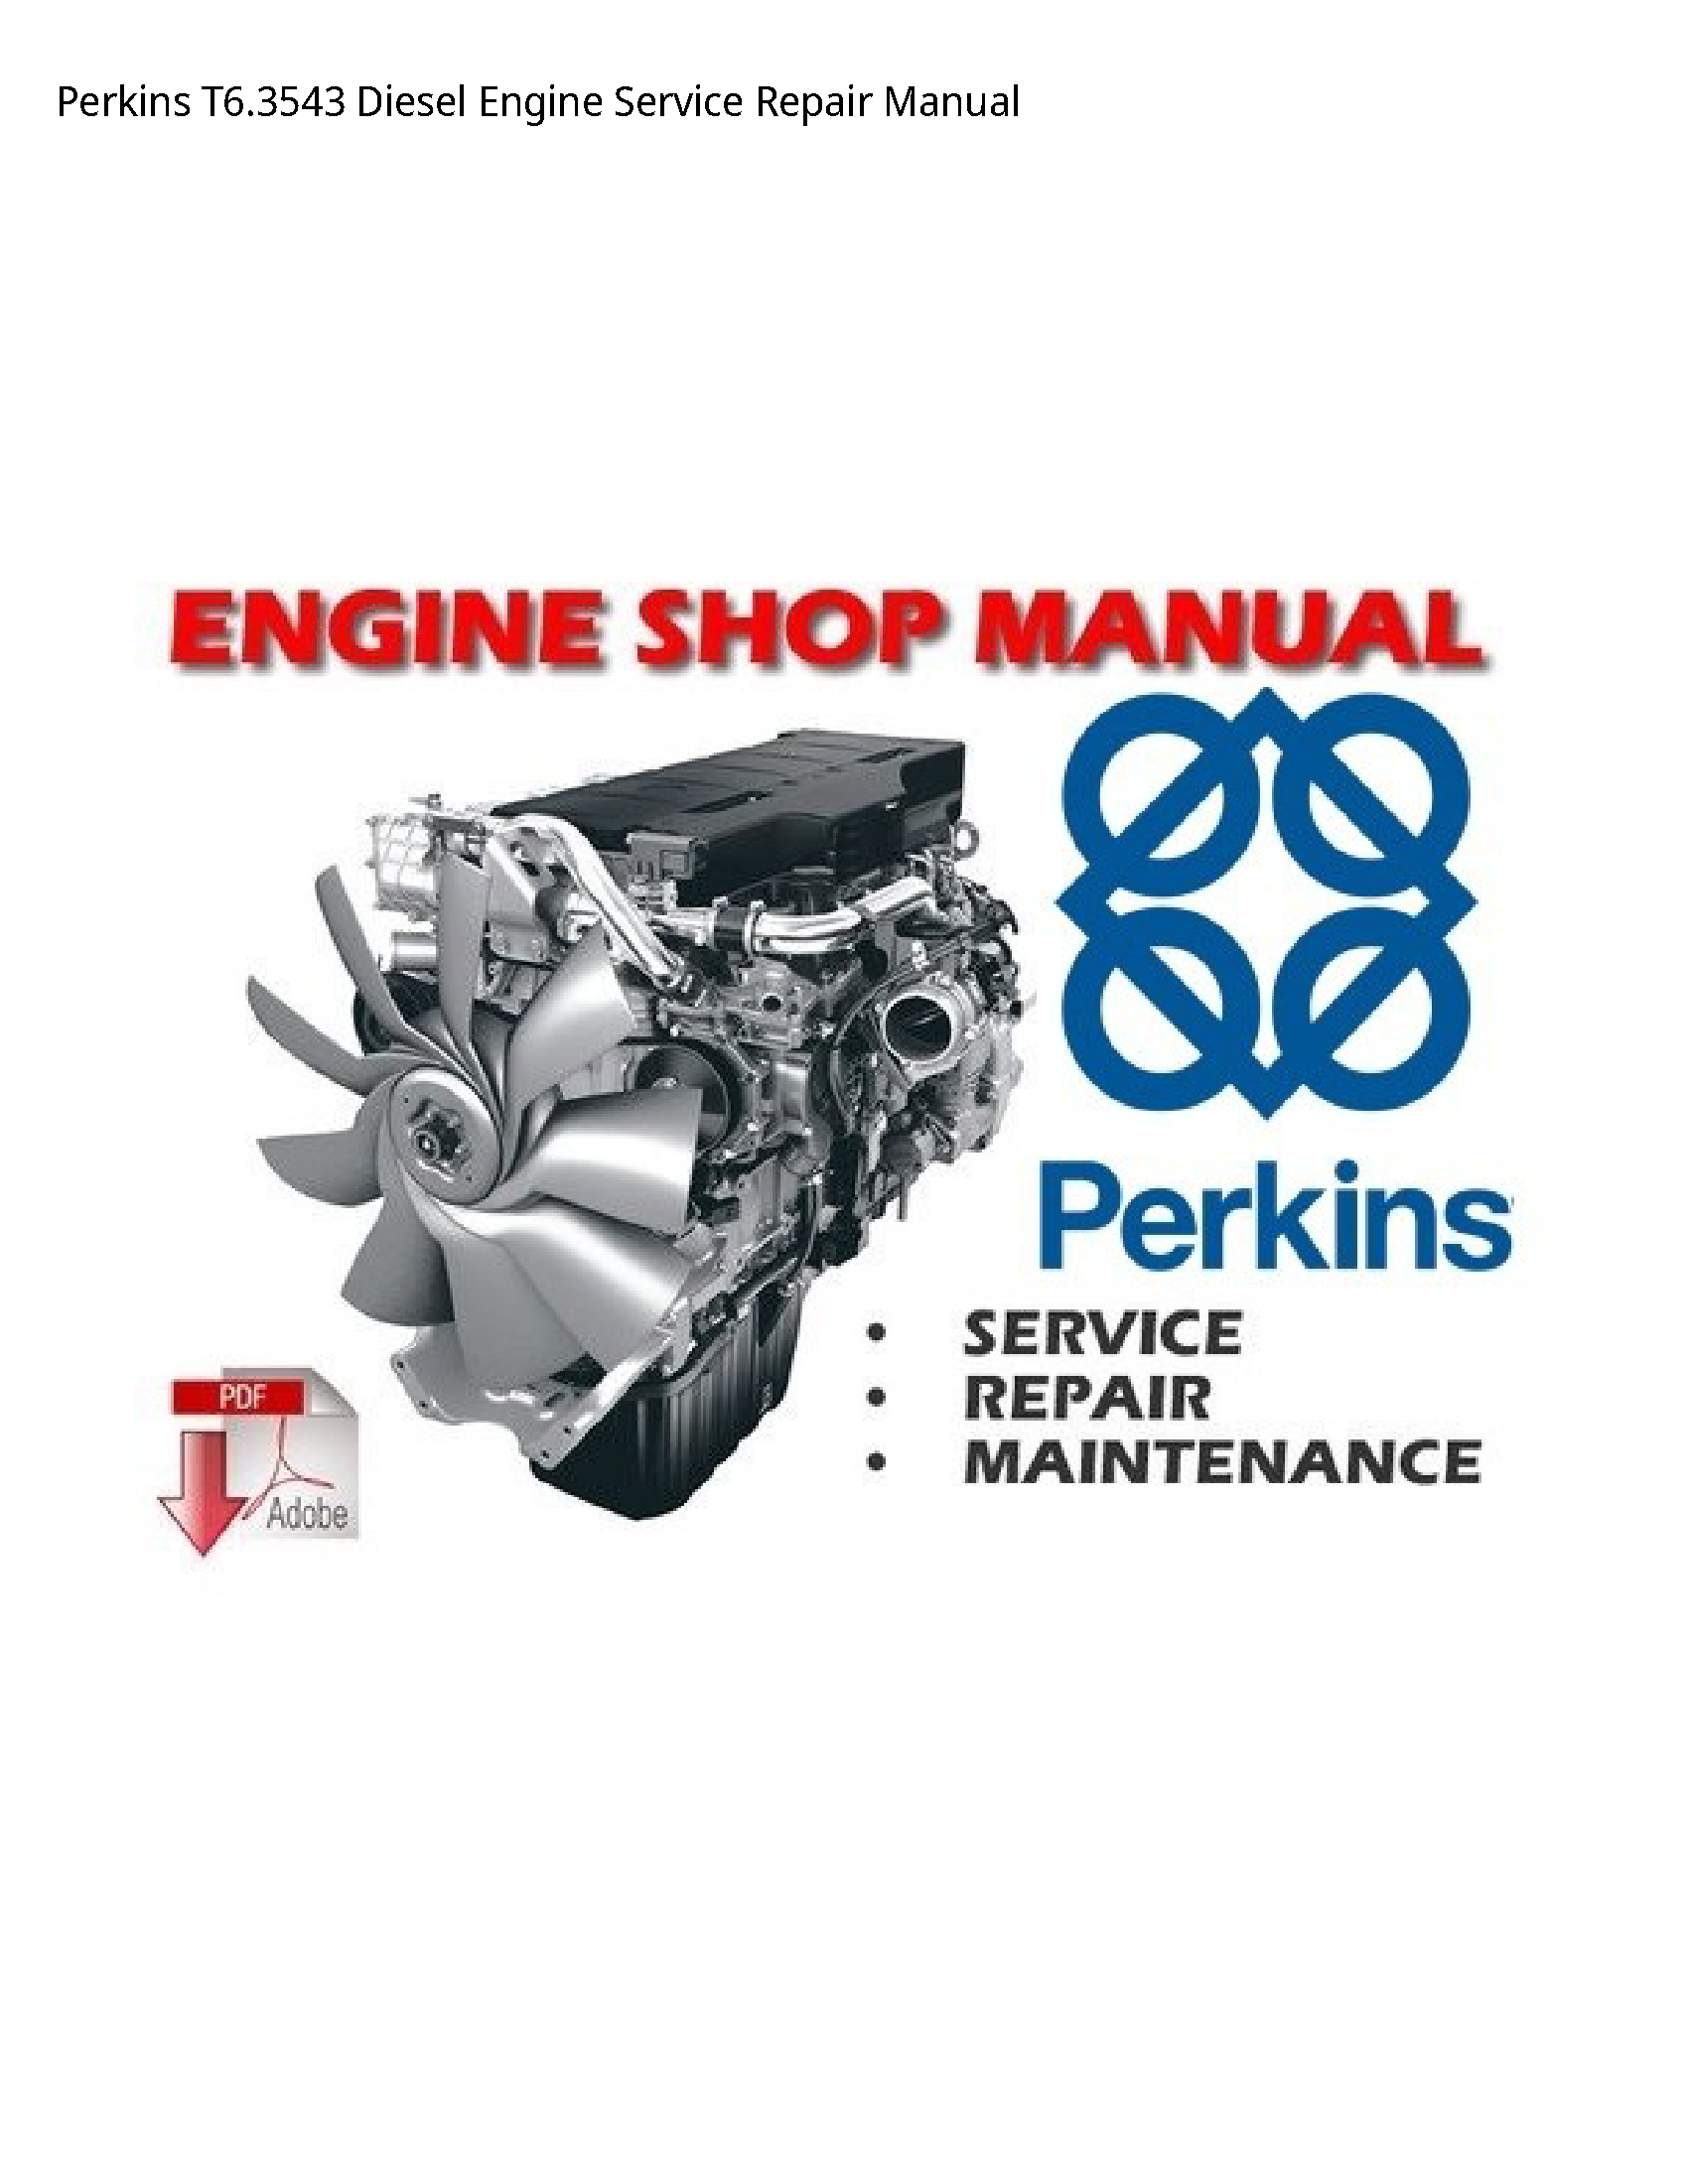 Perkins T6.3543 Diesel Engine manual